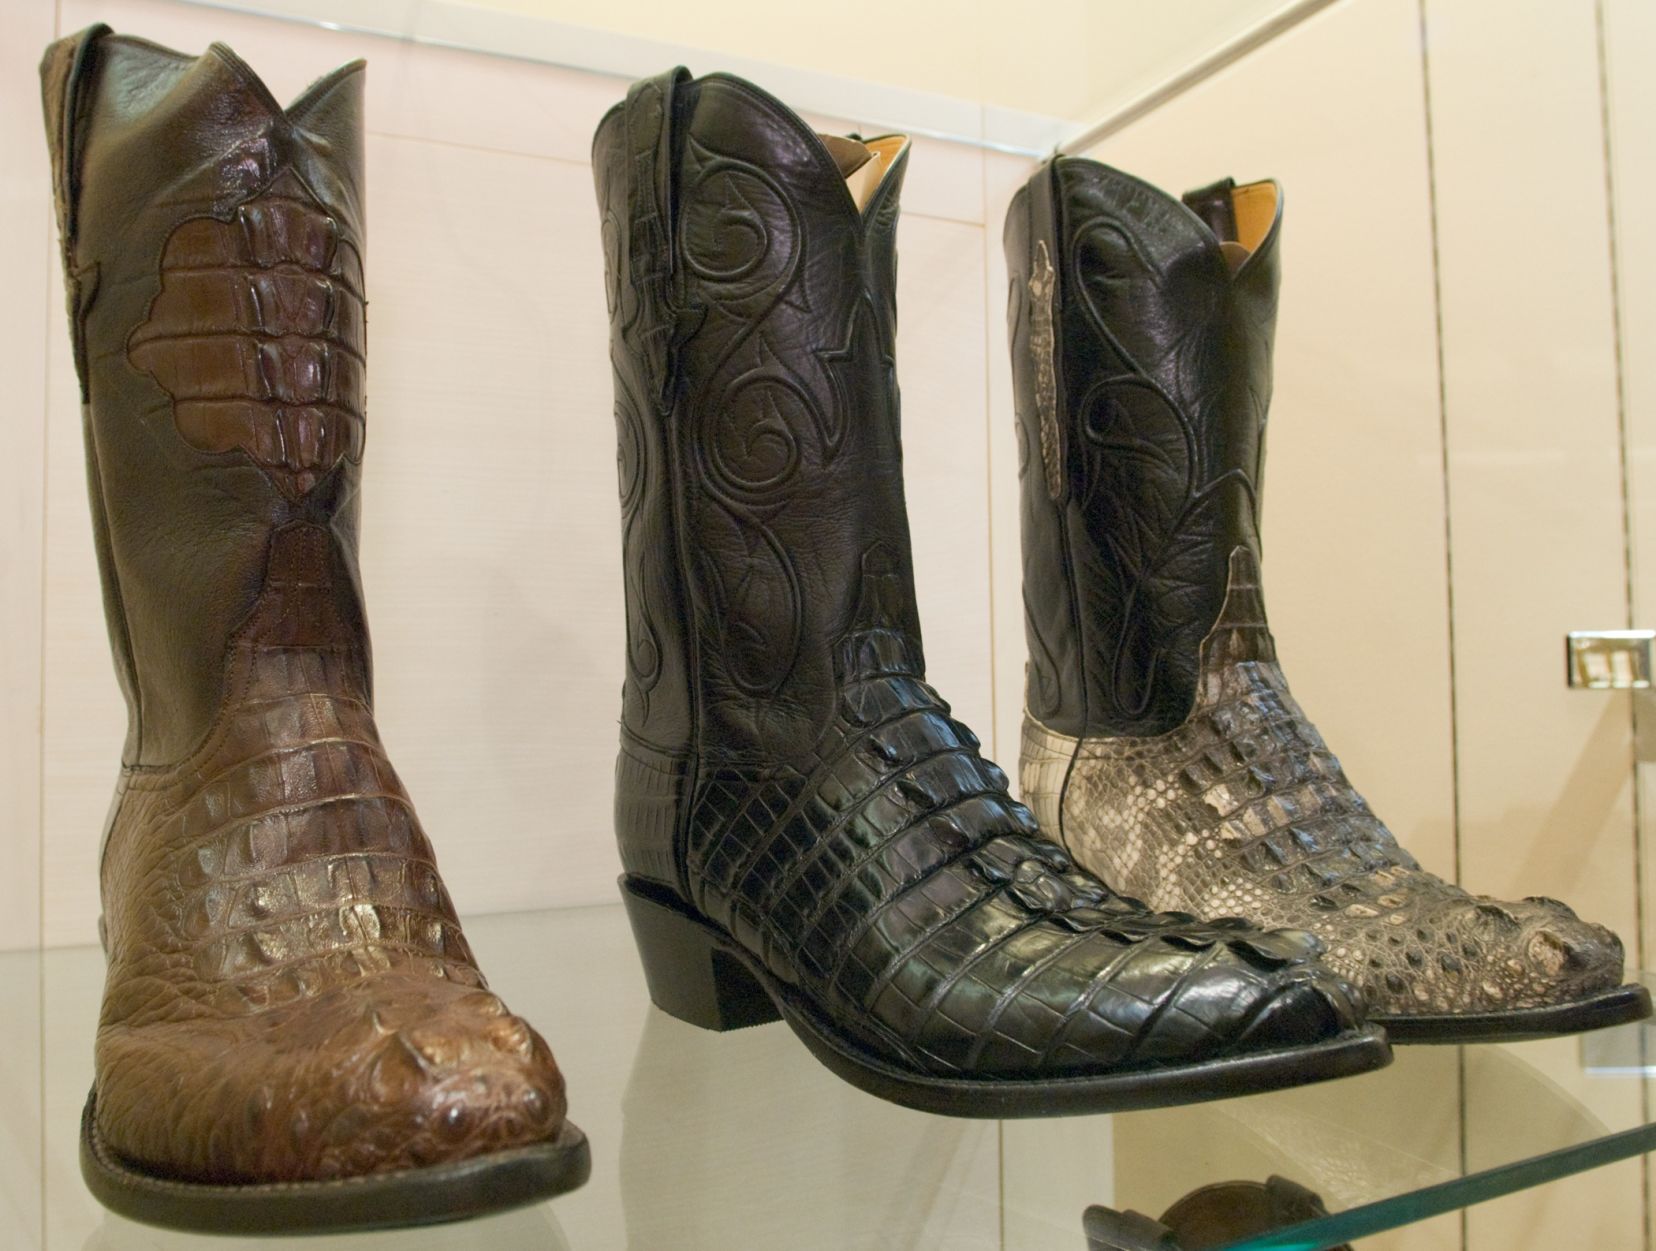 gator skin boots